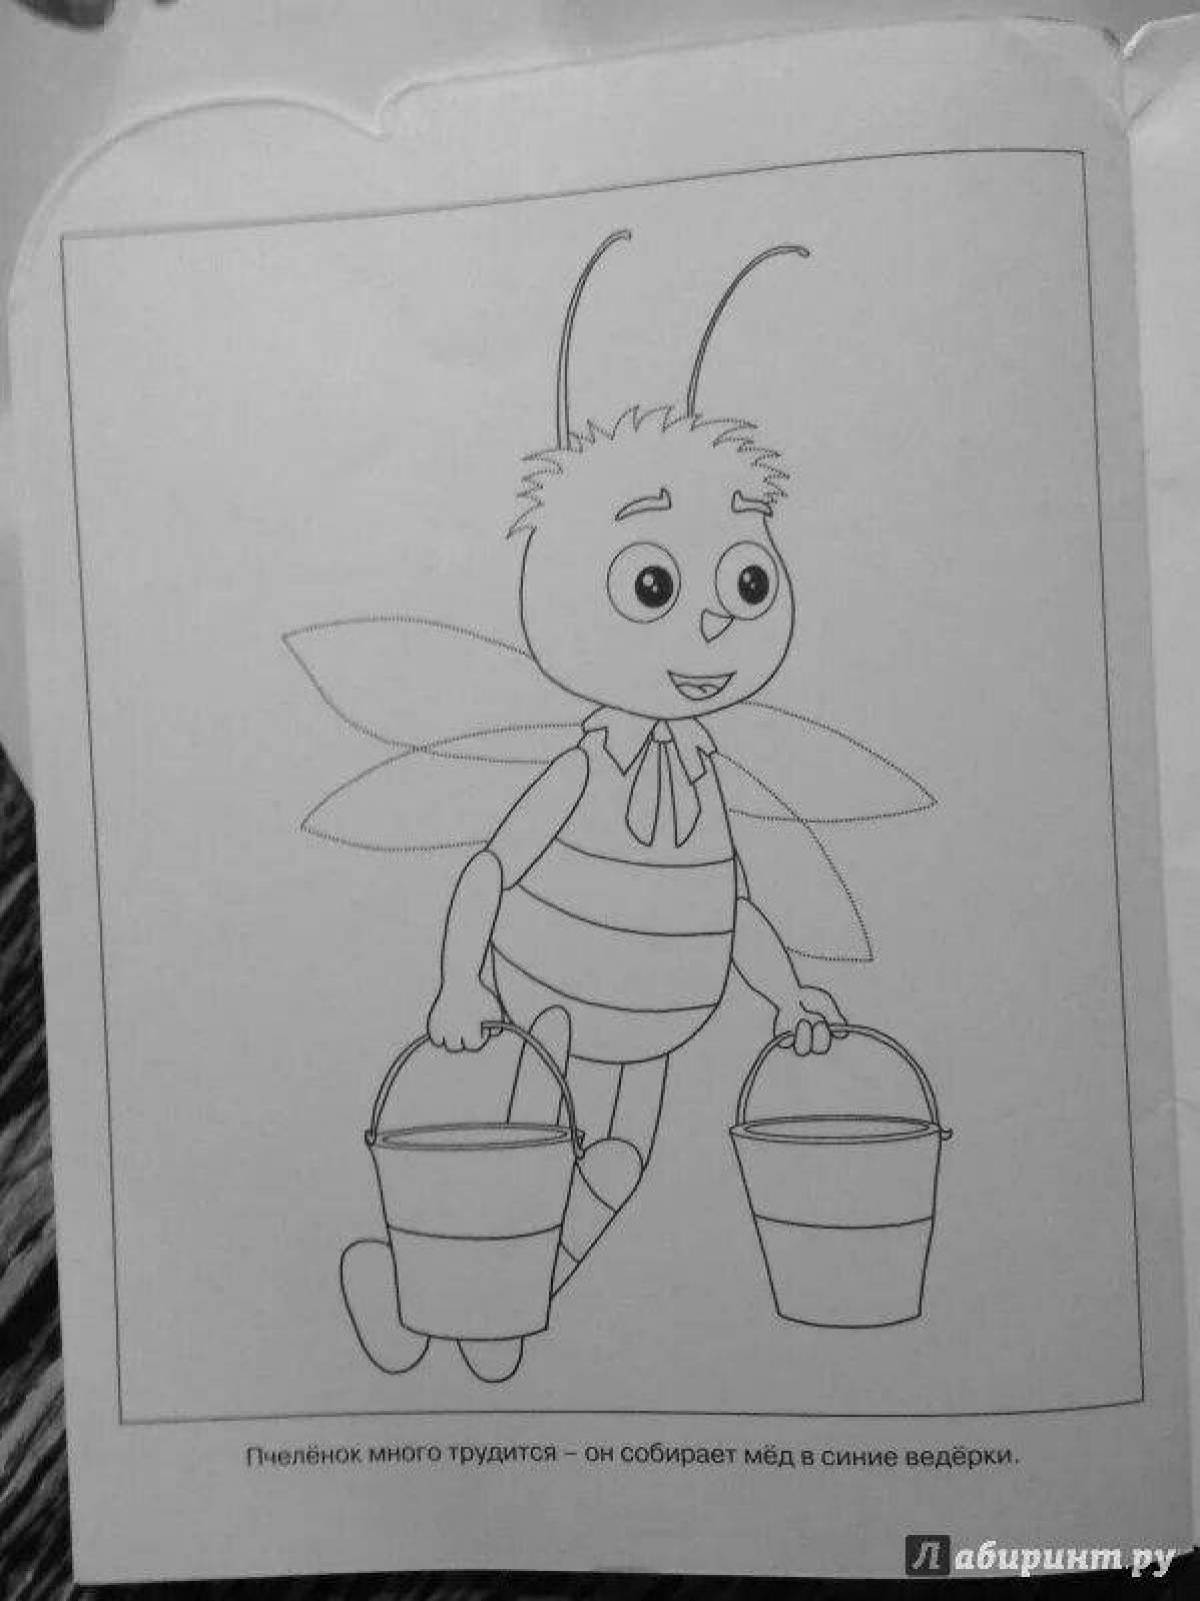 Пчеленок из лунтика #14